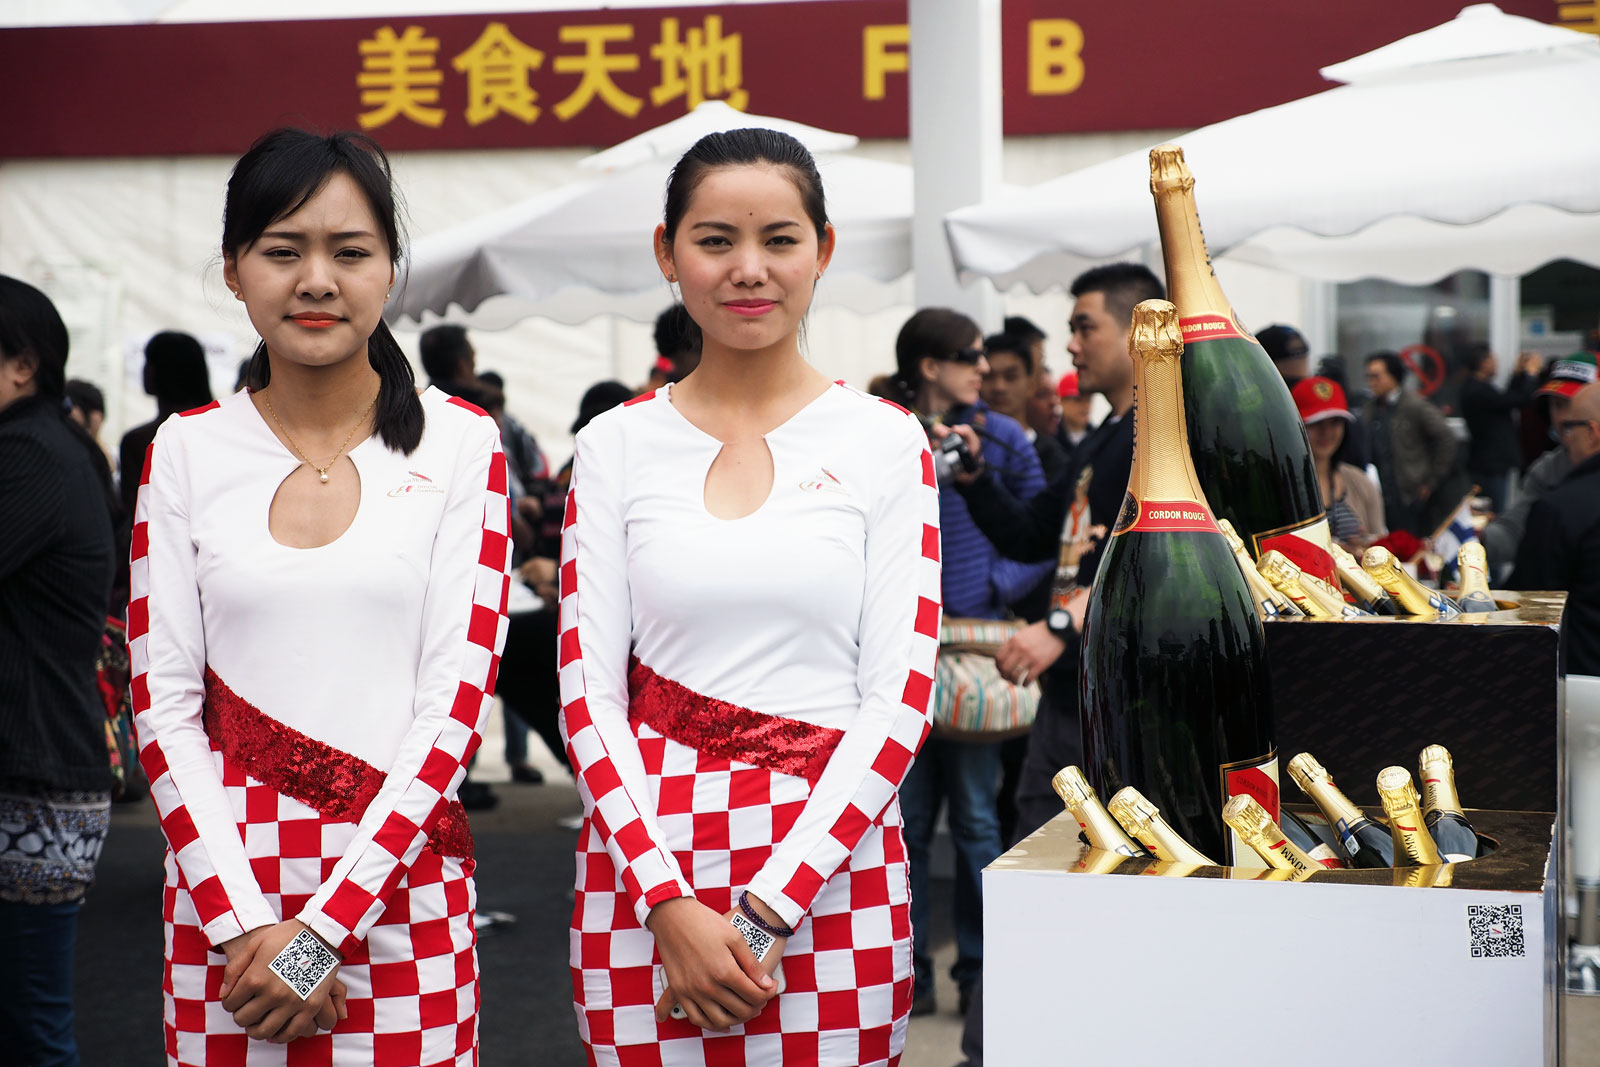 【F1ビューティー】2014 Rd.4 中国GP番外編「観客エリアの美女たち」